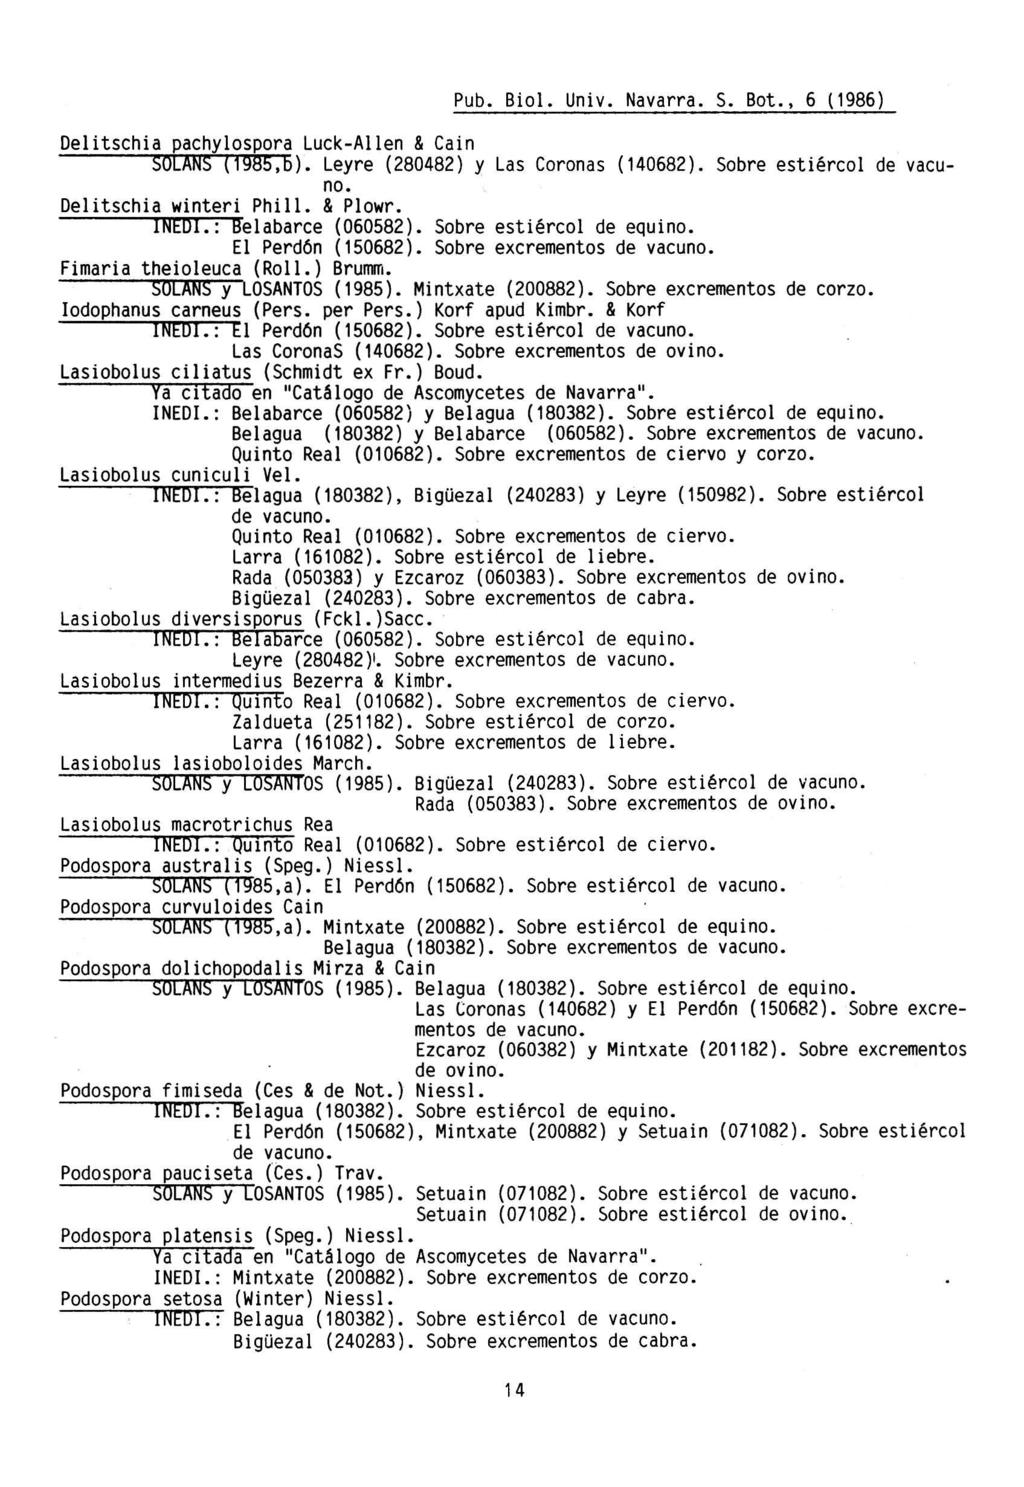 Pub. Biol. Univ. Navarra. S. Bot., 6 (1986) Delitschia pachylospora Luck-Allen & Cain SULANS (198b,b). Leyre (280482) y Las Coronas (140682). Sobre estiércol de vacuno. Delitschia winteri Phill.